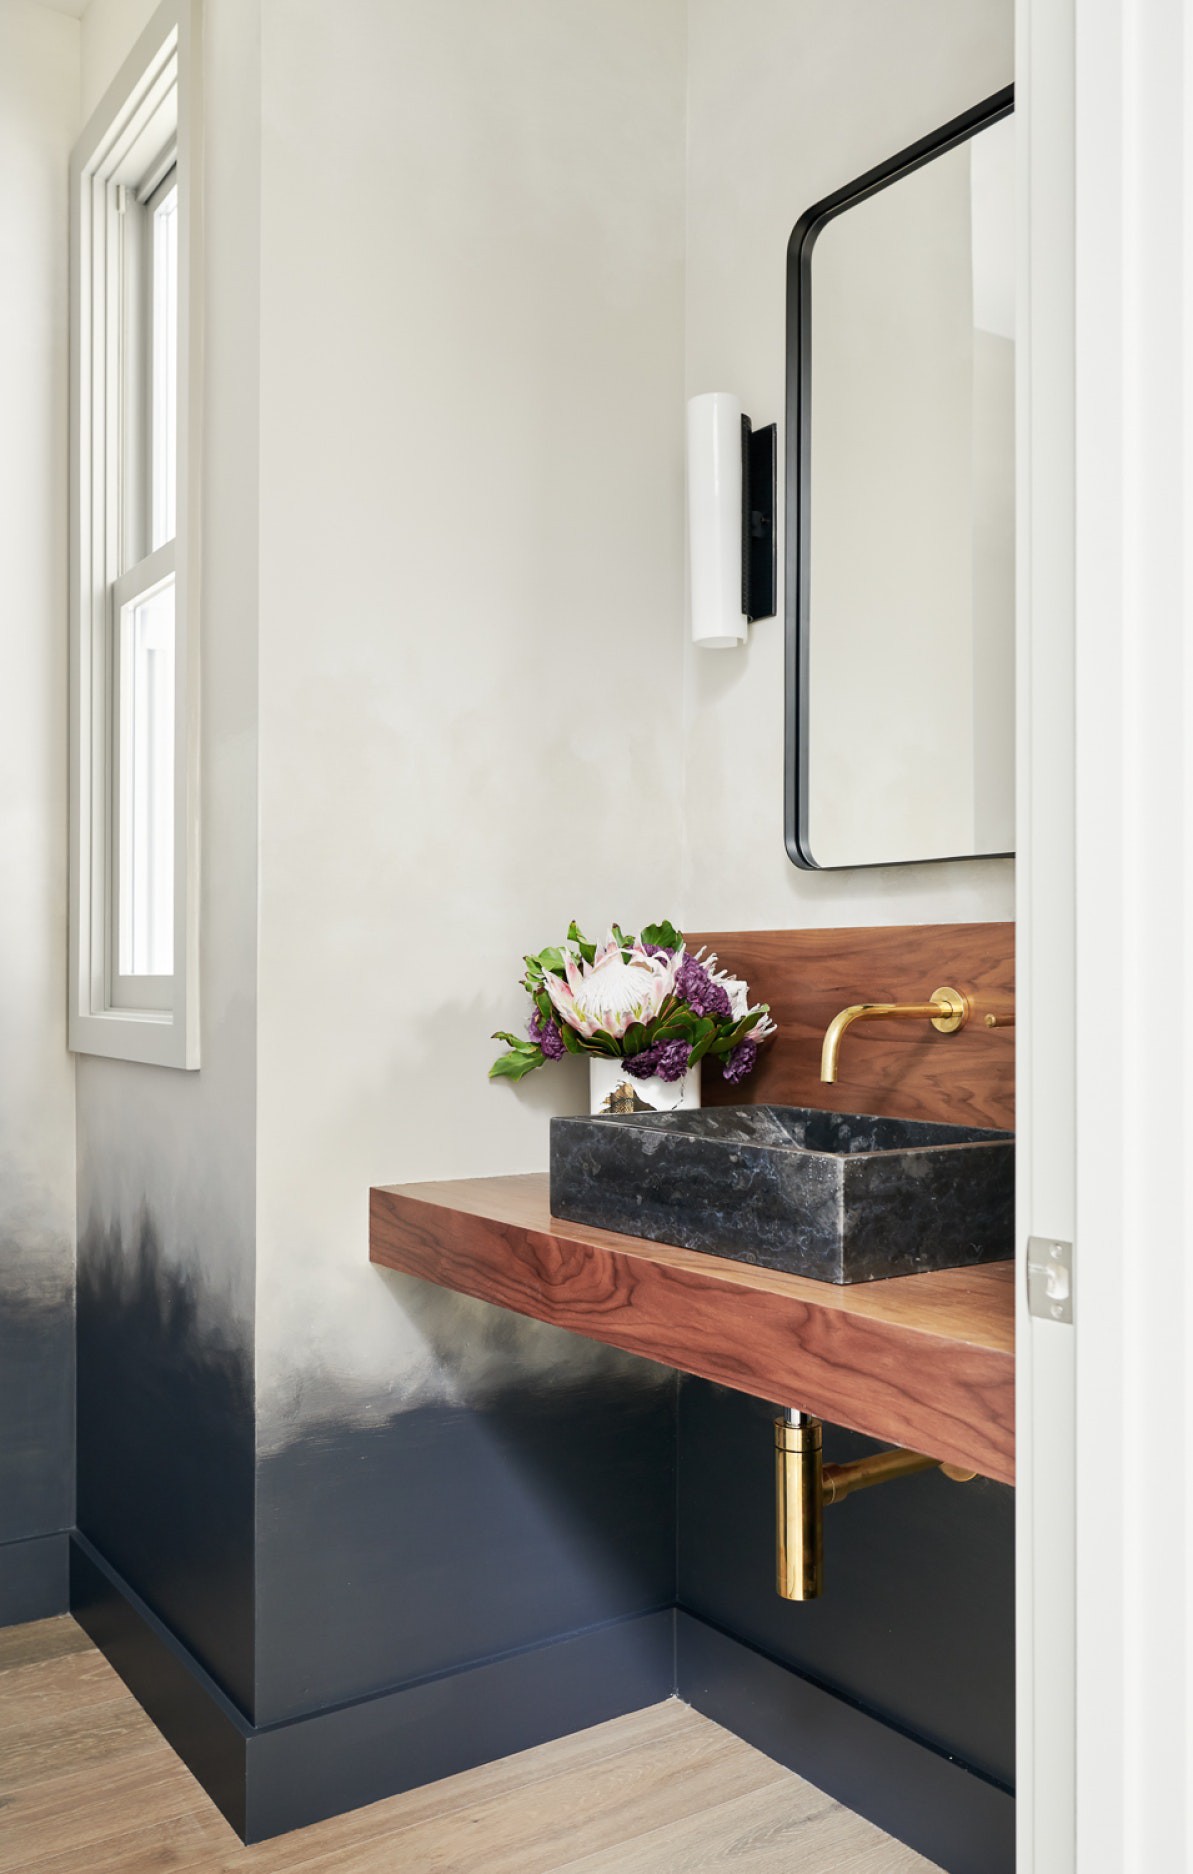 Hình ảnh một góc phòng tắm với bồn rửa làm bằng đá cẩm thạch đen, hài hòa với phân chân tường sơn đen